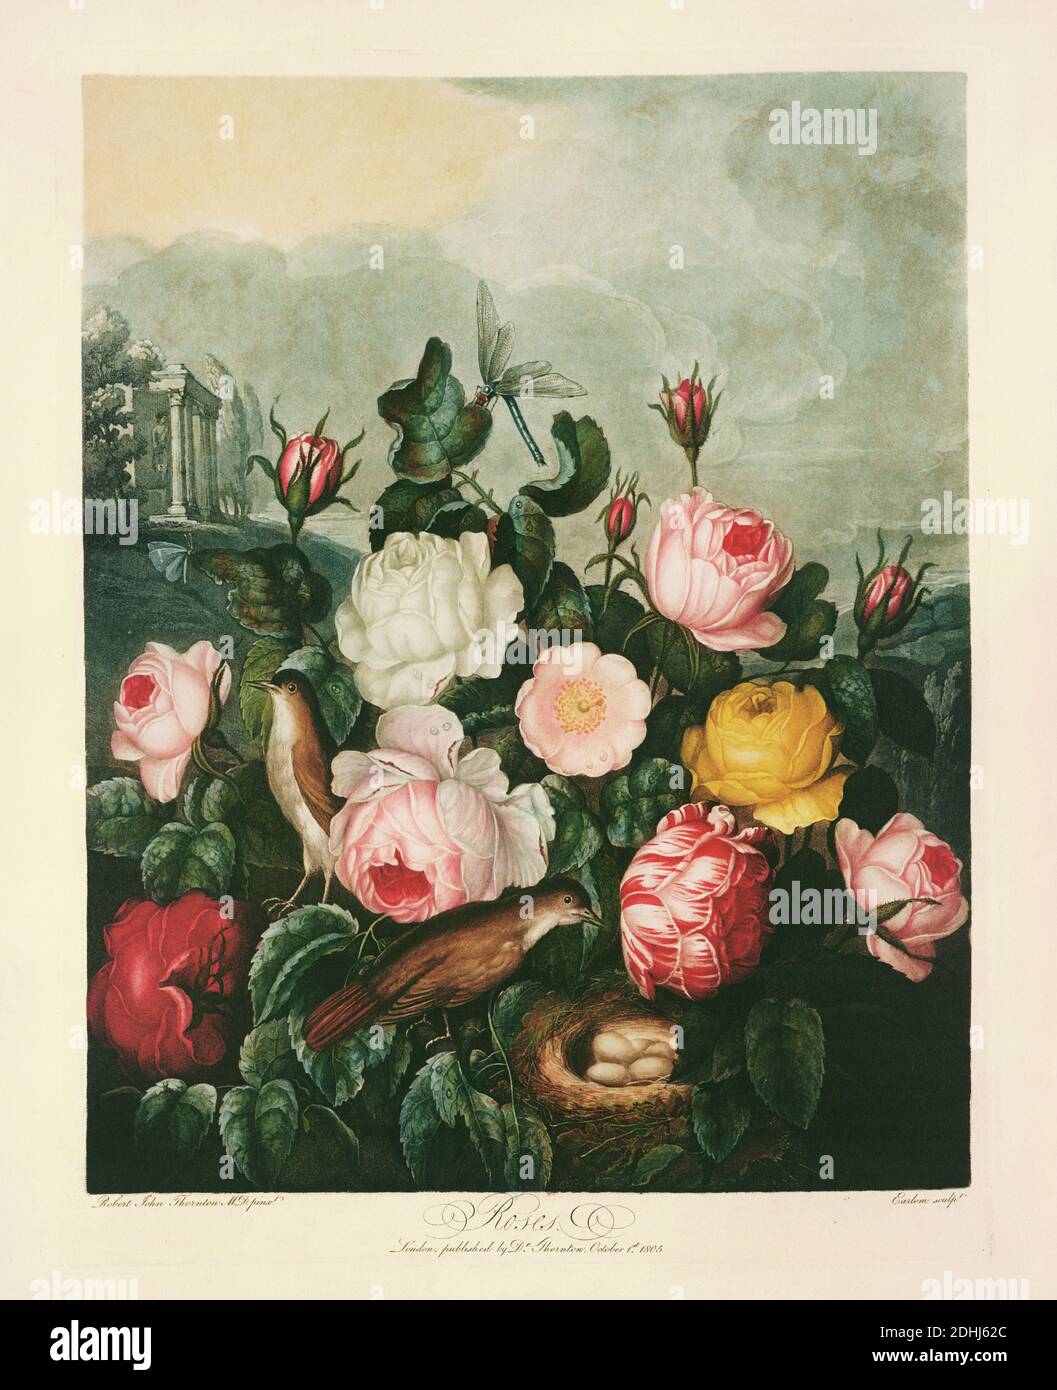 Rosen - Rosa Centifolia L, Rosa hemisphaerica. Veröffentlicht von Robert John Thornton (1768-1837), einem englischen Arzt und botanischen Schriftsteller, in 'A New Ill Stockfoto